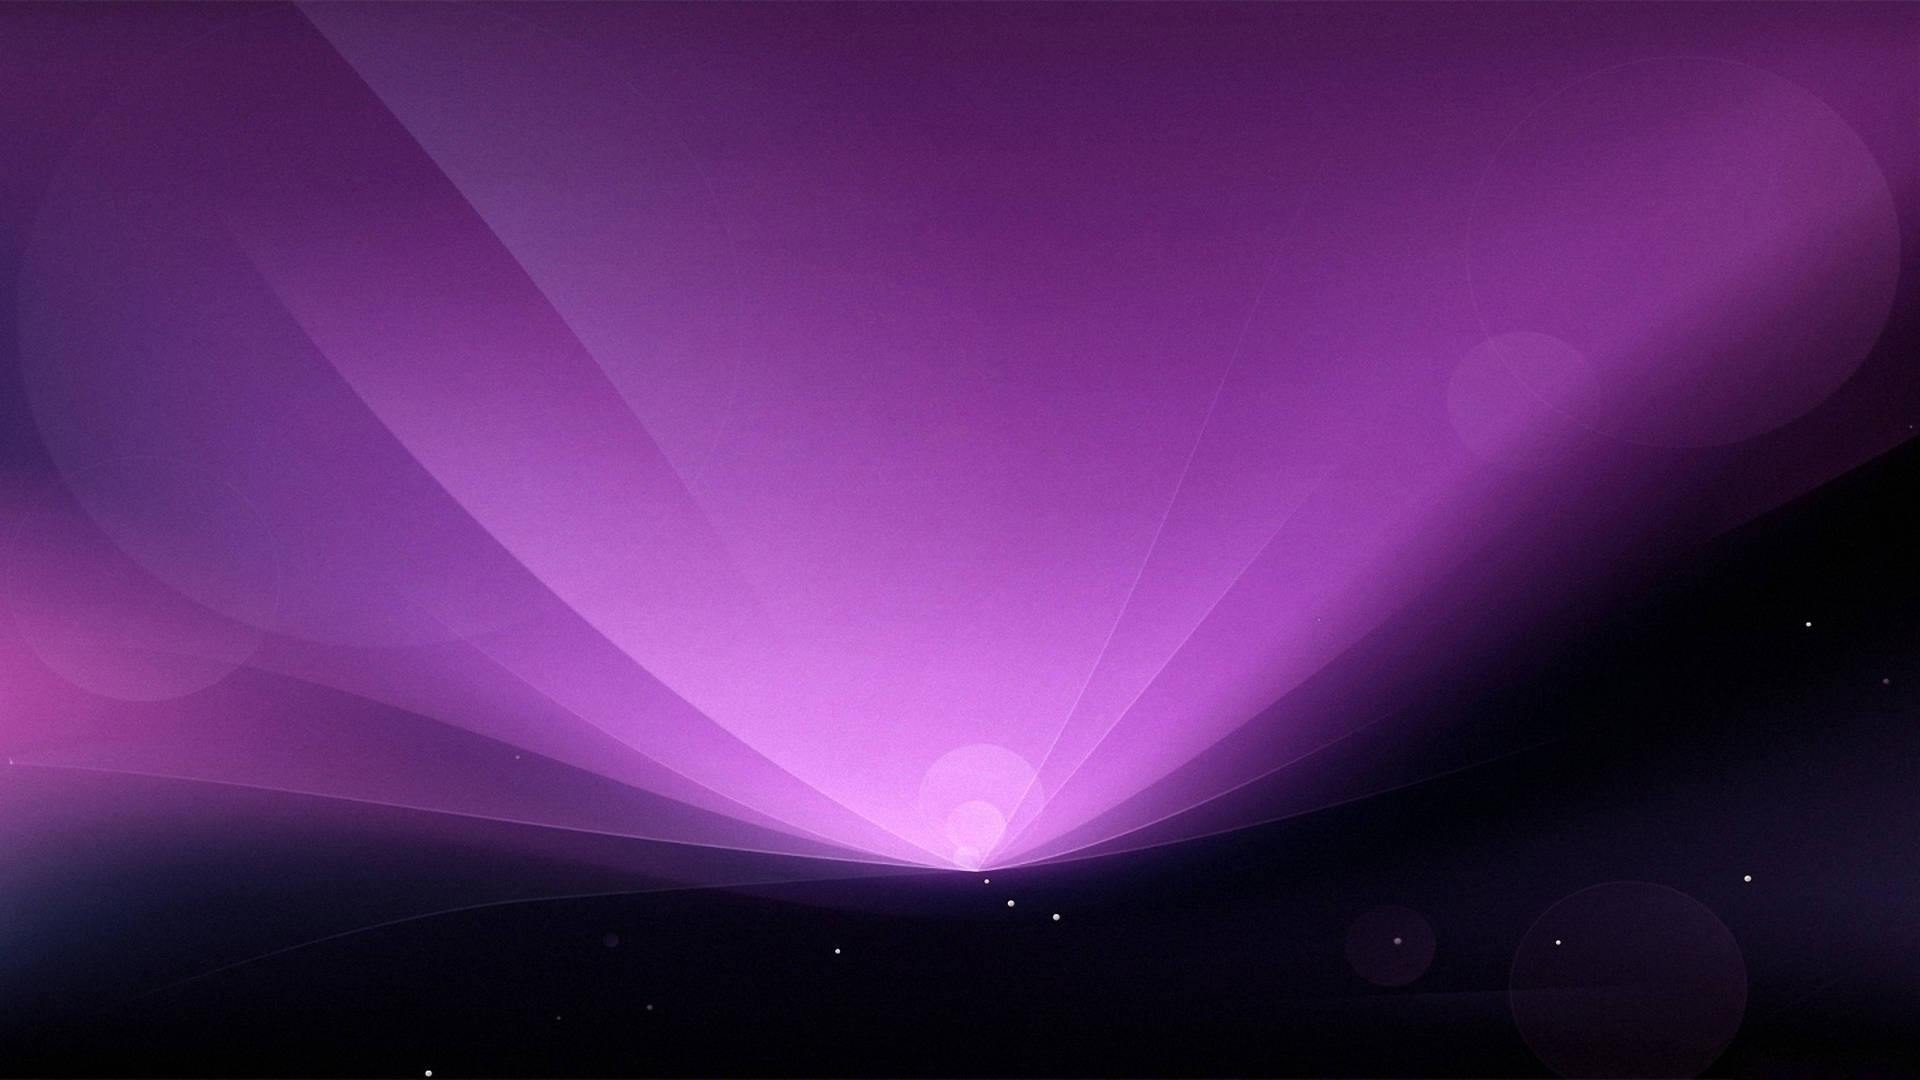 Light Art Effects On Purple